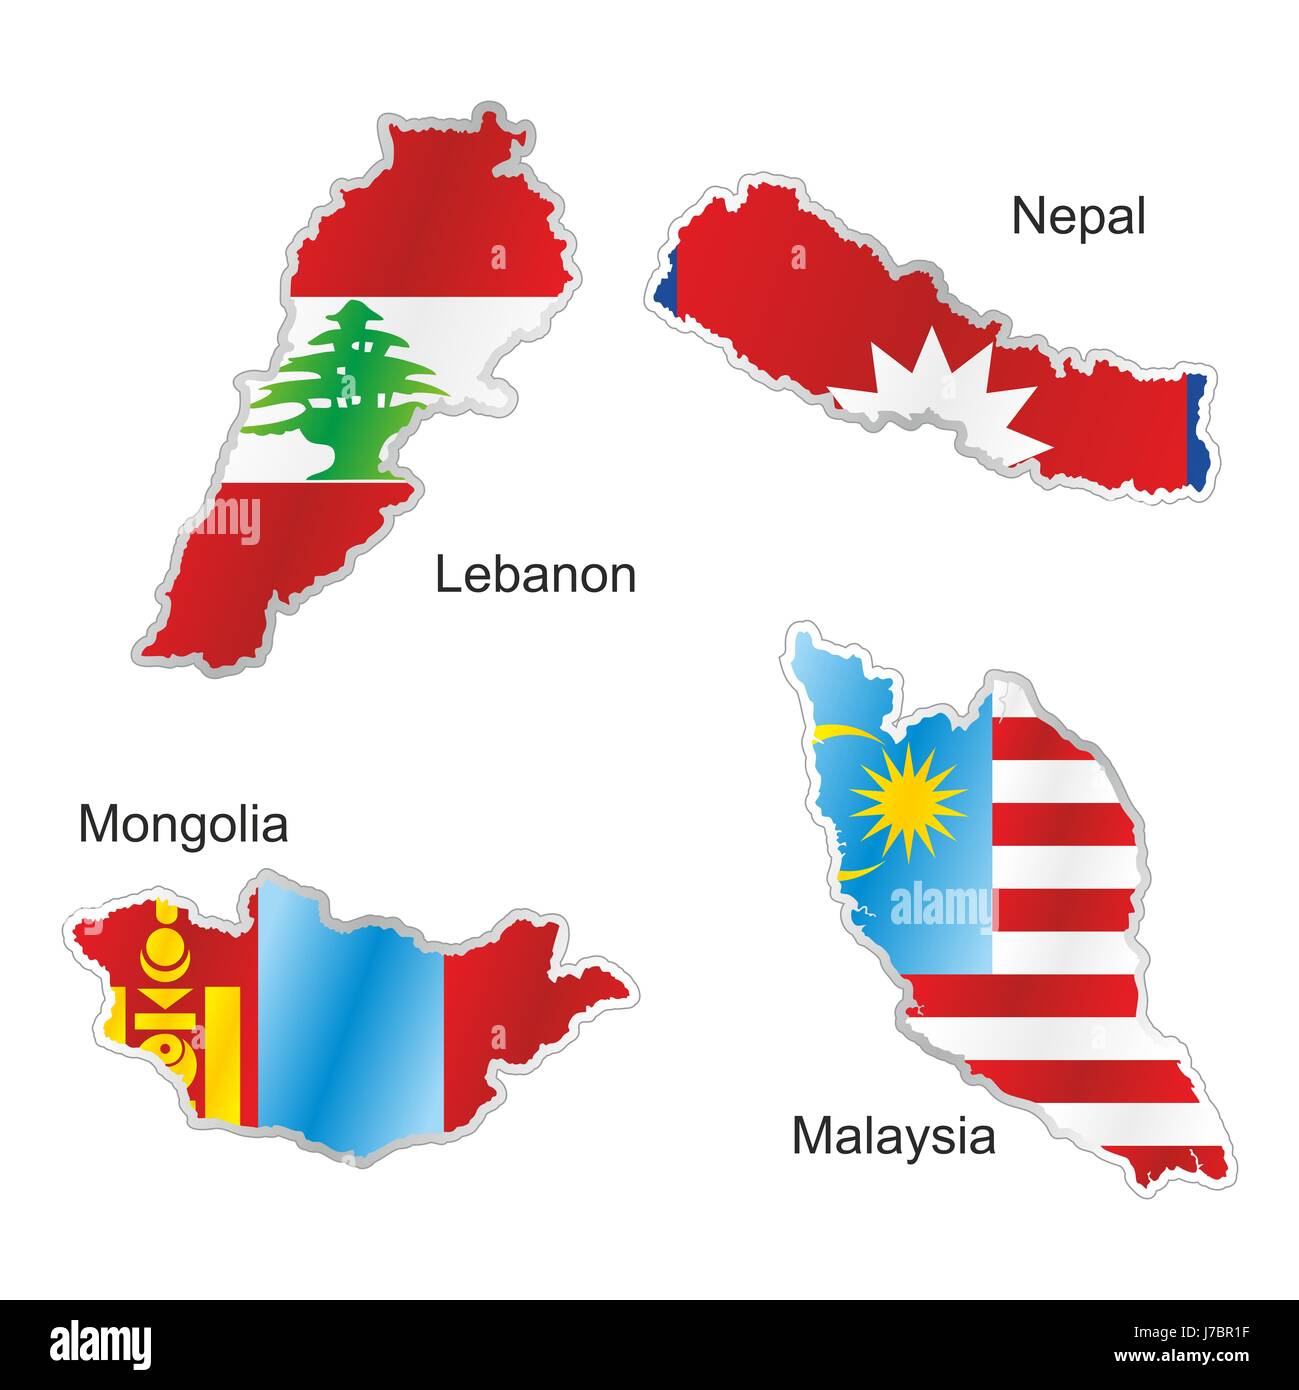 Asie Malaisie Mongolie Népal Drapeau Liban Atlas Des Cartes